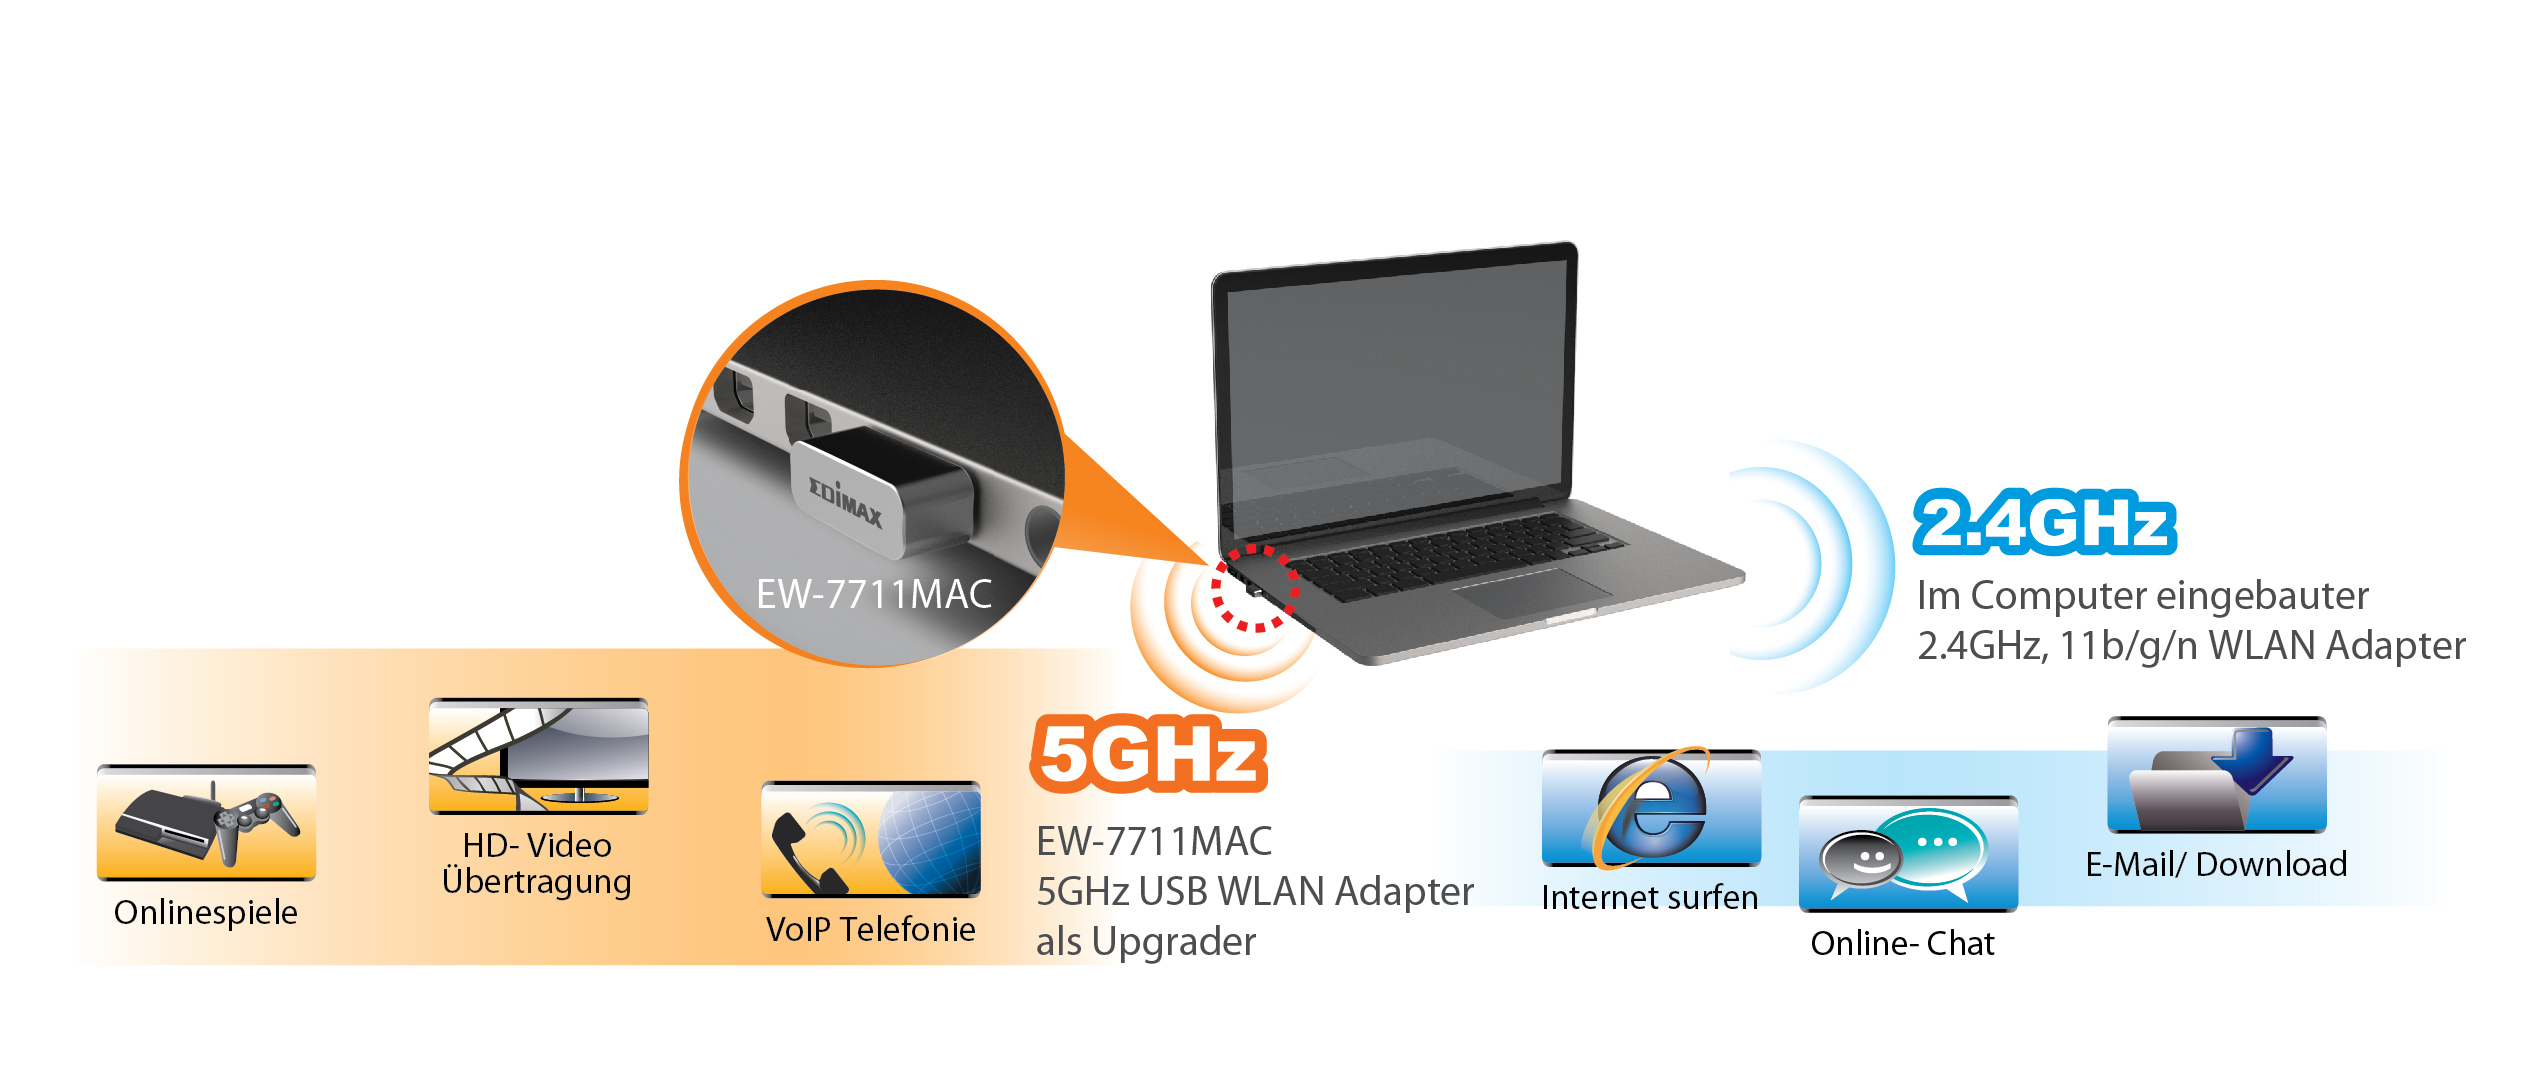 Edimax EW-7711MAC AC450 Wi-Fi USB Adapter-11ac Upgrade for MacBook, EW-7711MAC_application_diagram.jpg